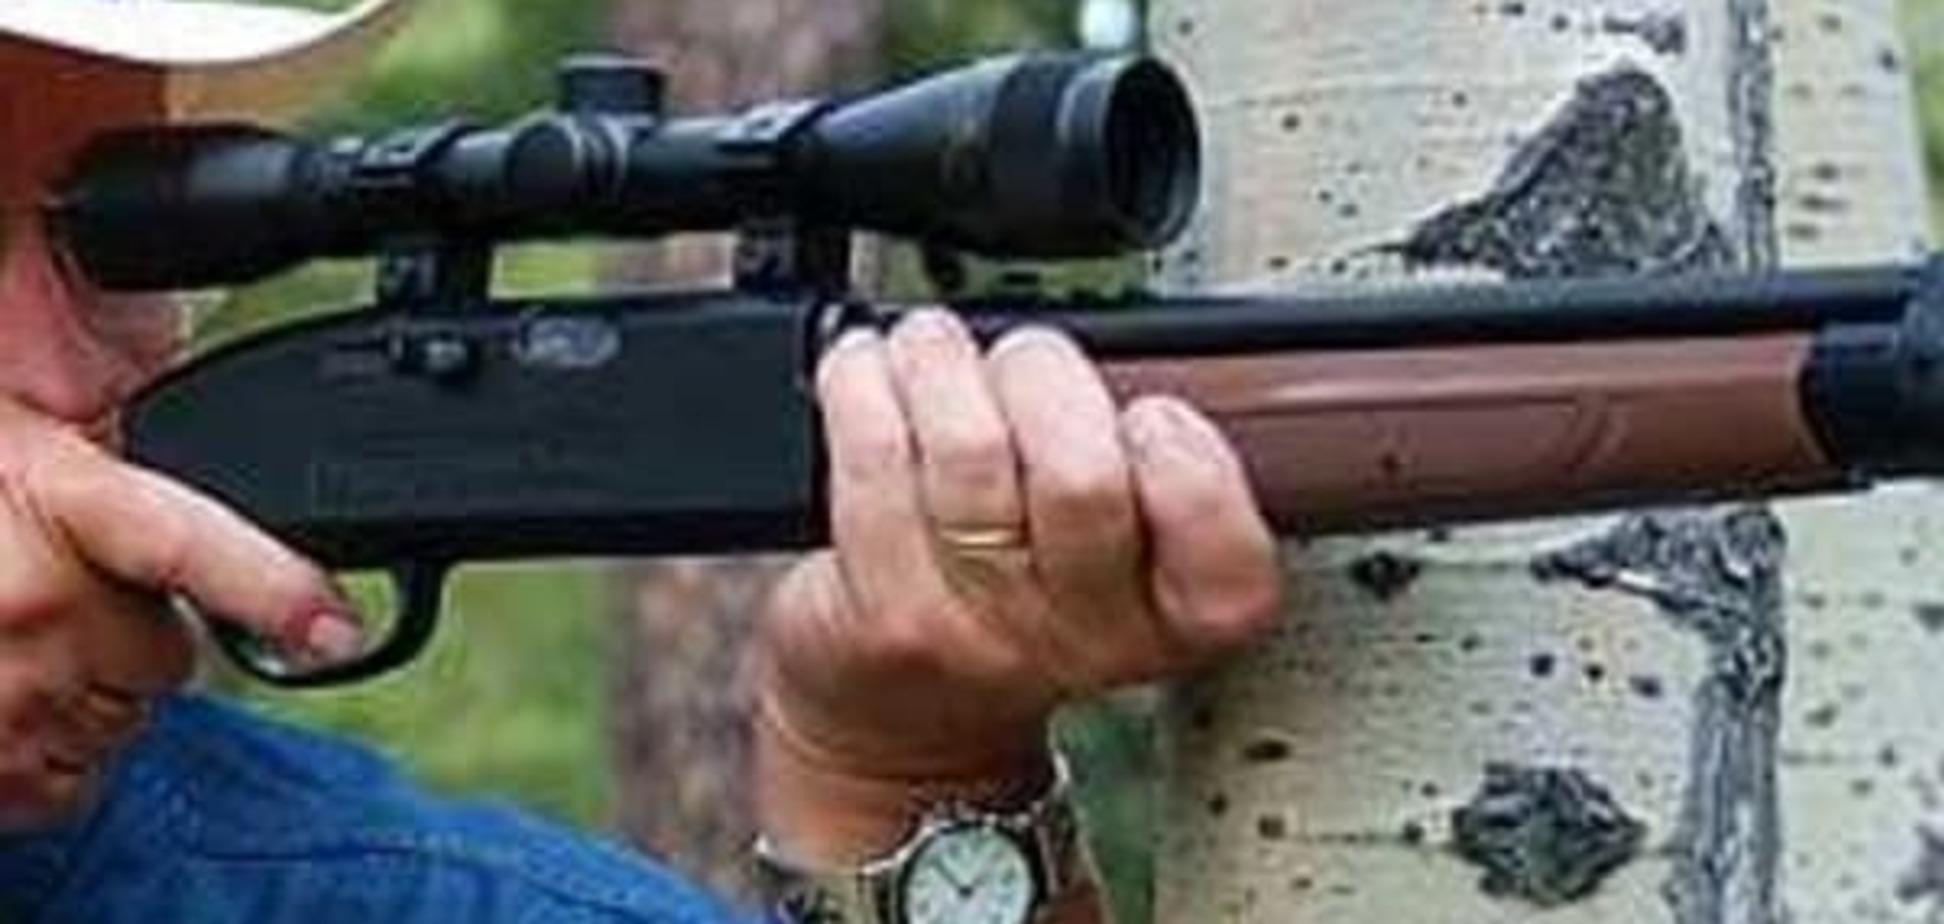 У Києві пенсіонер влаштував відстріл птахів із бойової гвинтівки